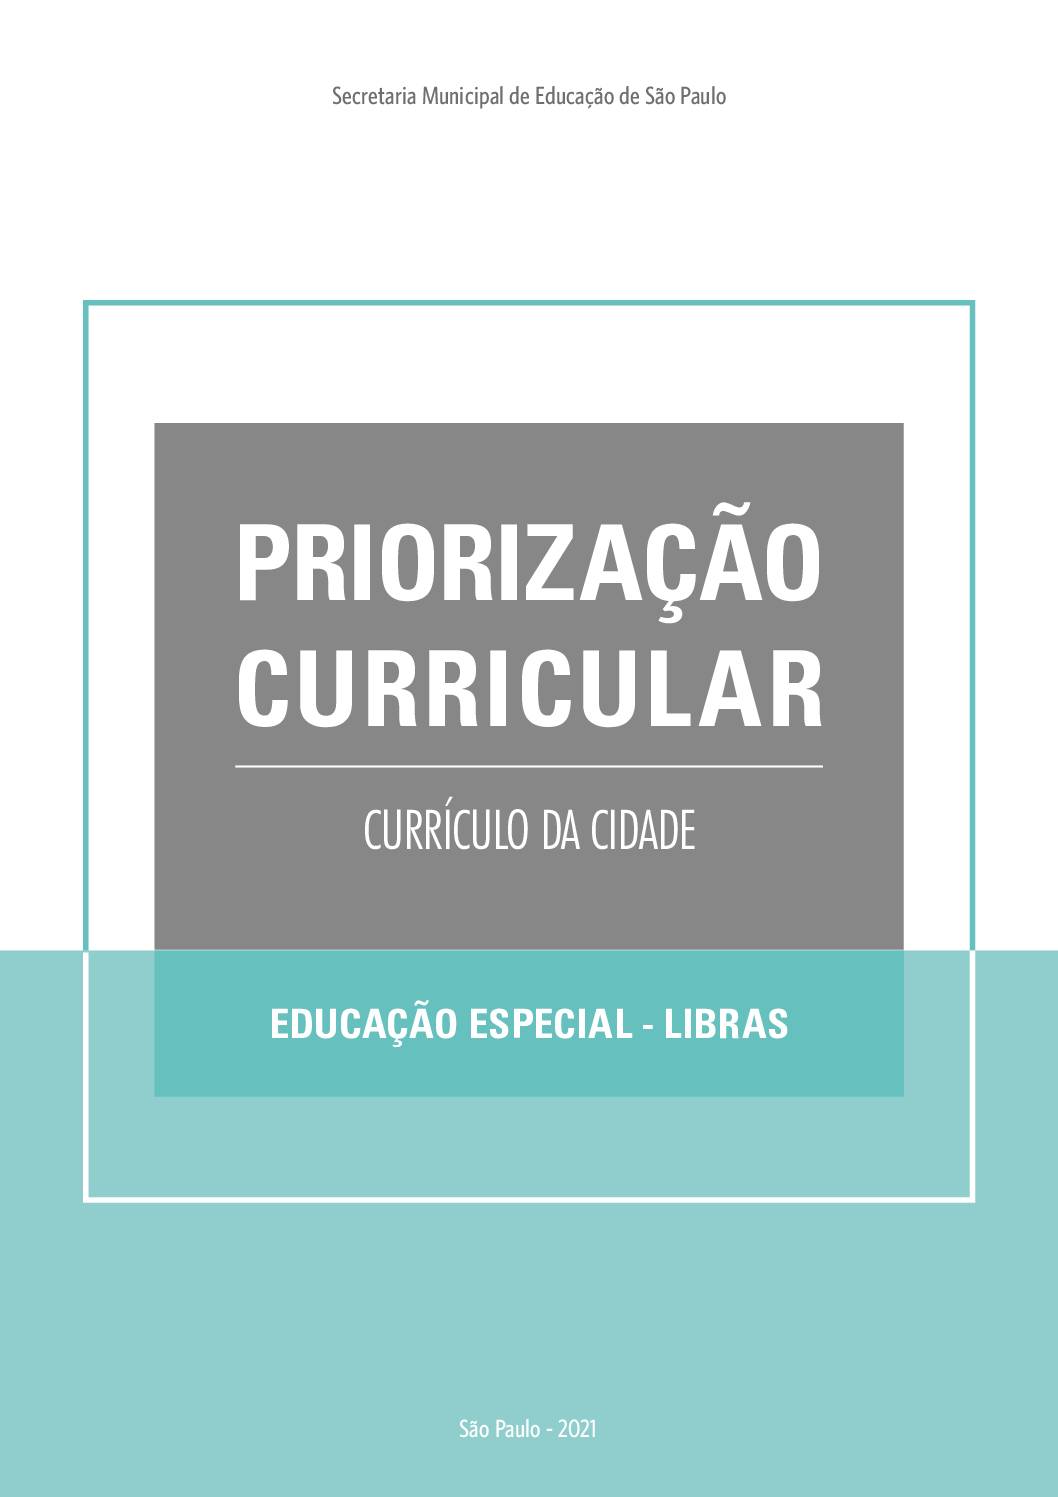 Publicação que apresenta os objetivos de aprendizagem prioritários do Currículo da Cidade de Língua Brasileira de Sinais - Libras.